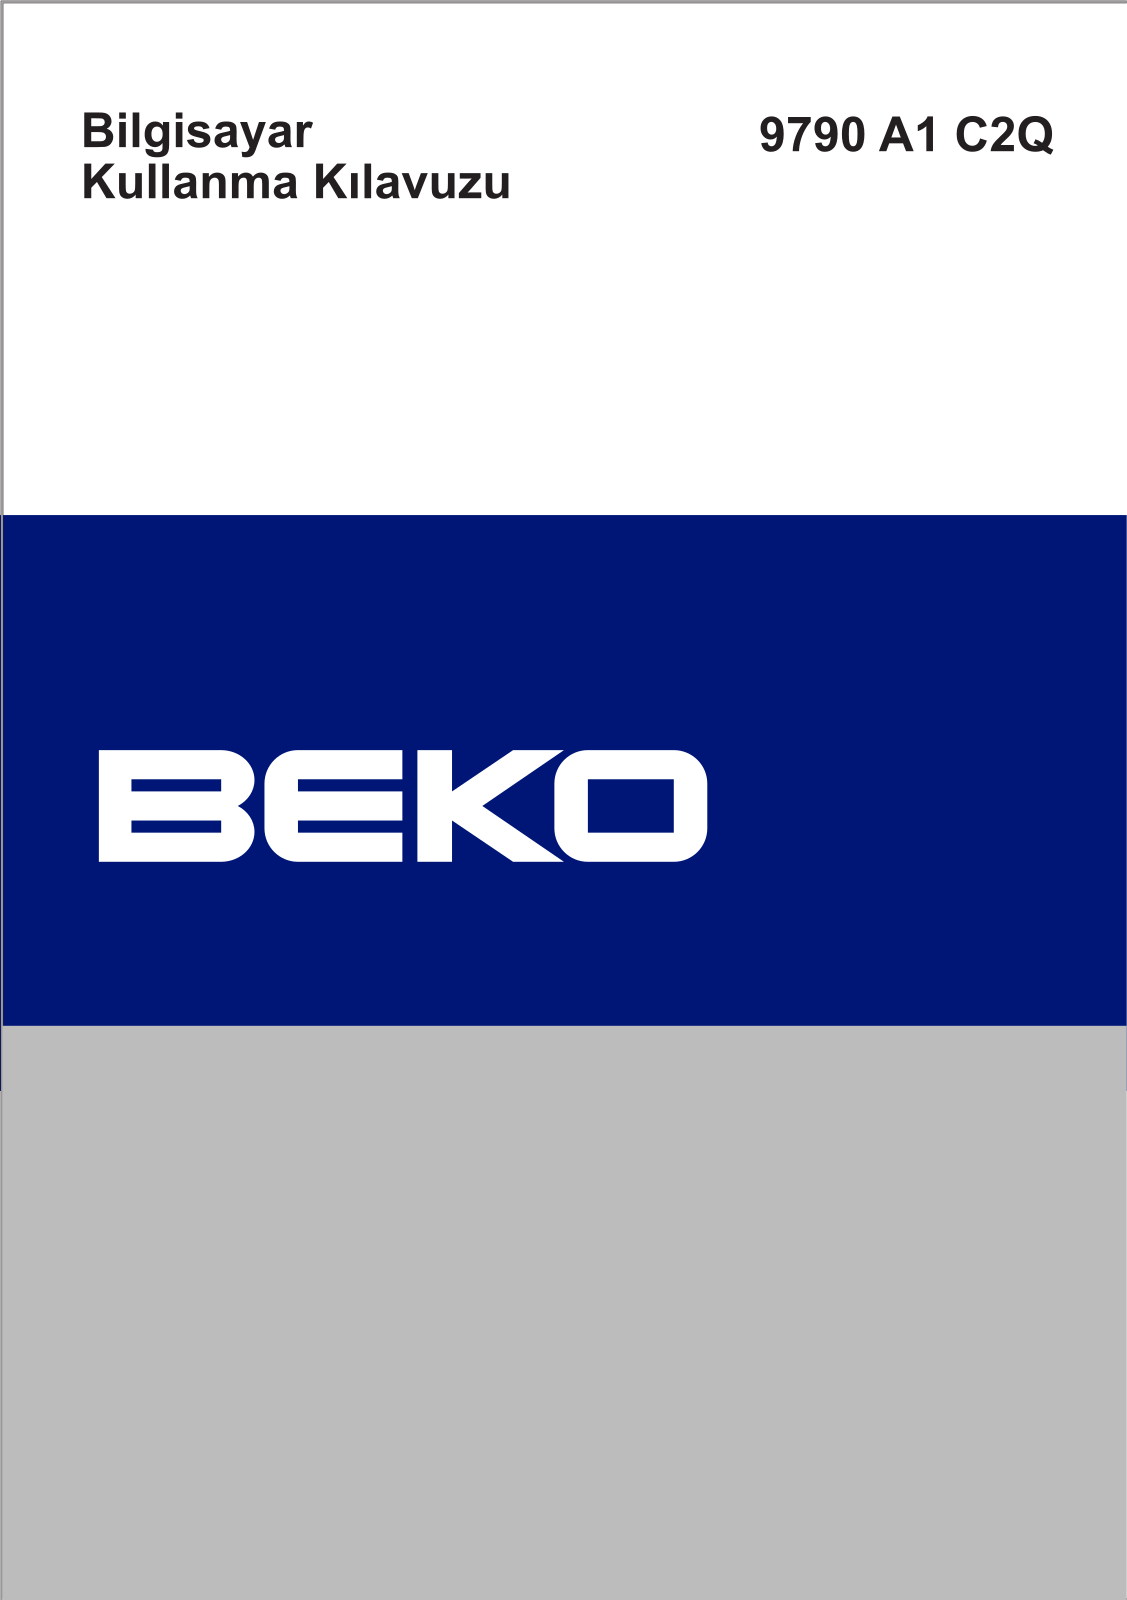 Beko 9790 A1 C2Q Manual